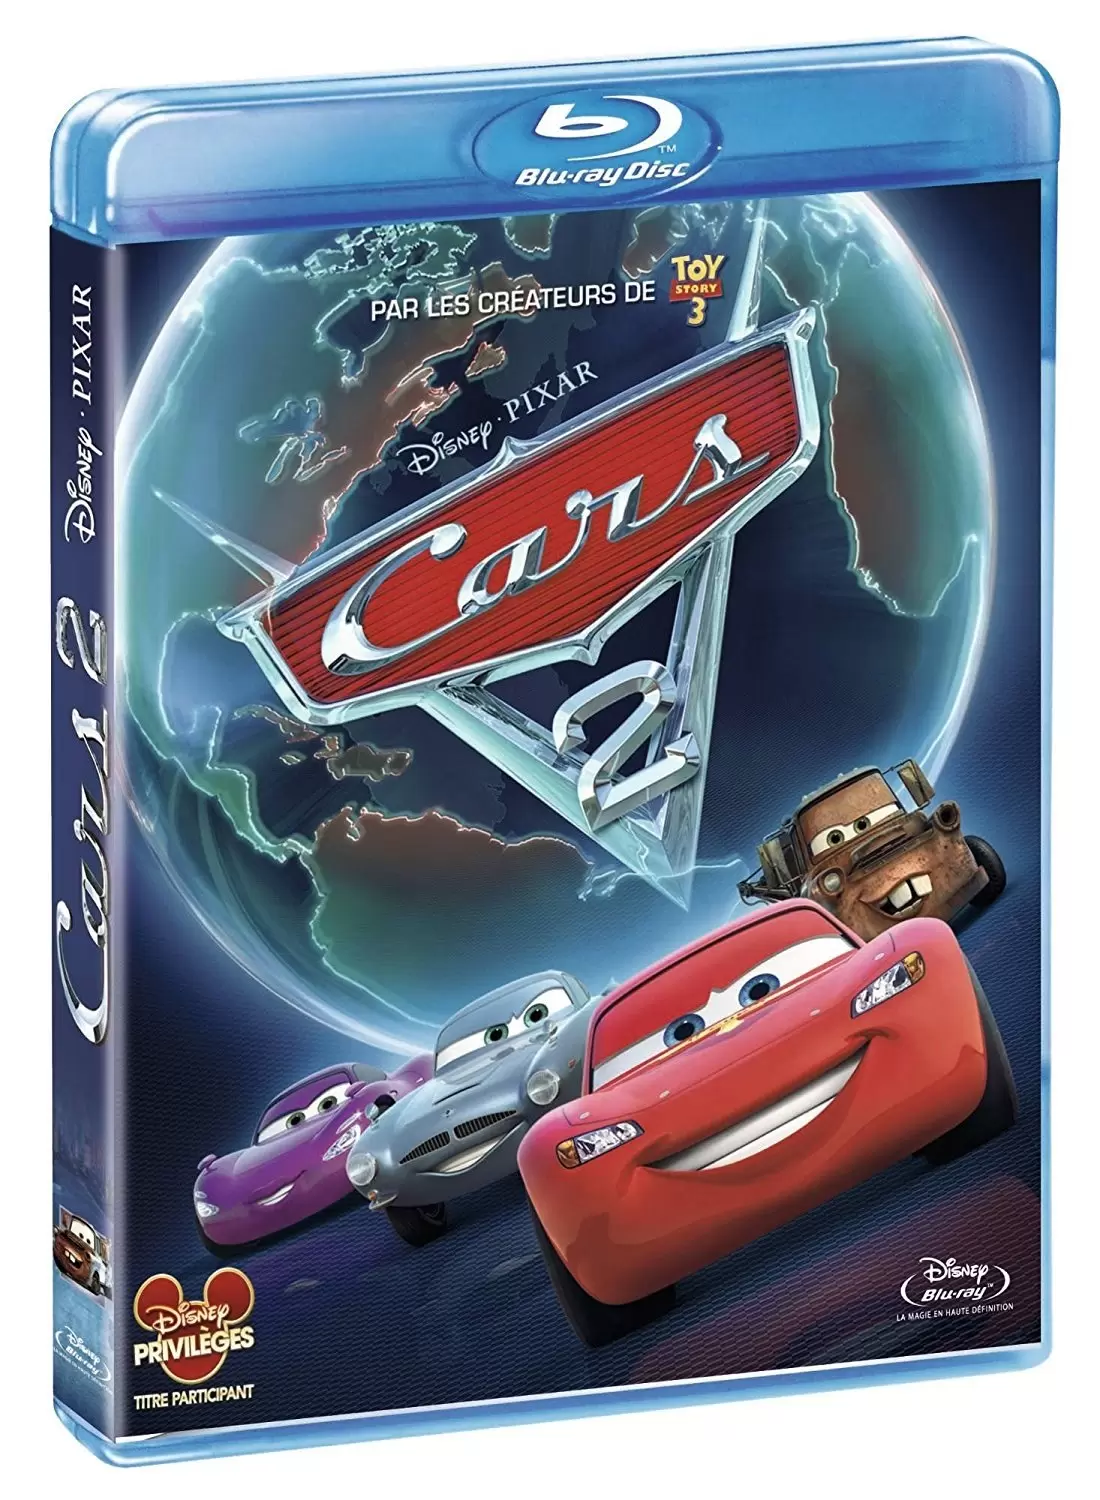 Les grands classiques de Disney en Blu-Ray - Cars 2